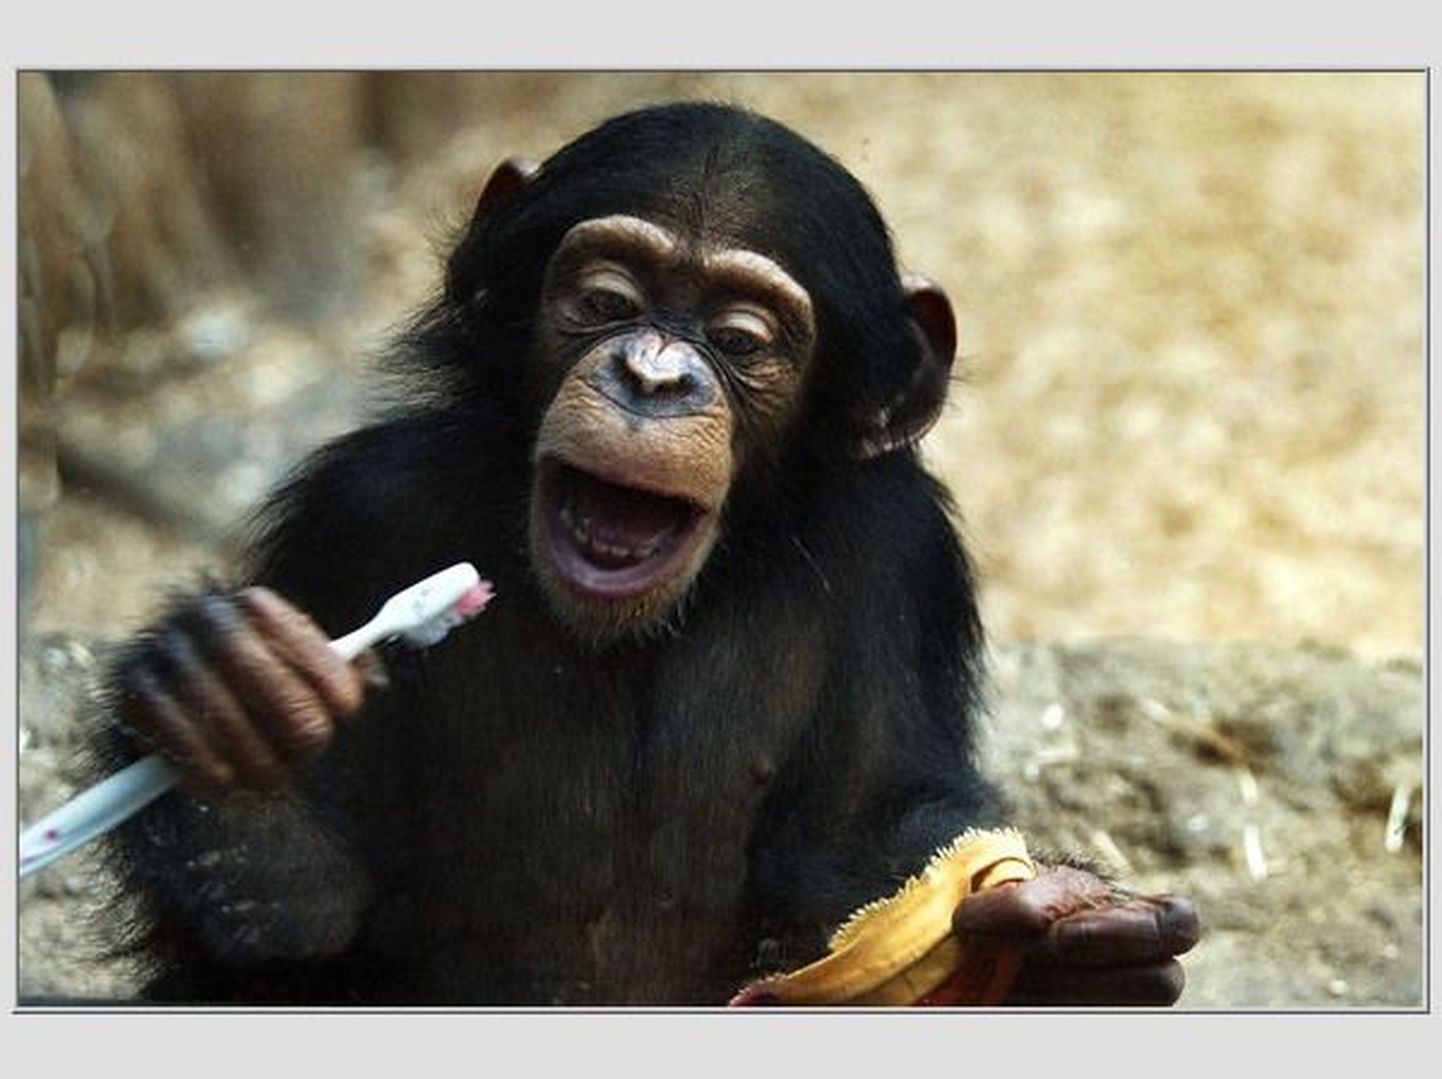 Väike šimpans teab, et pärast sööki tuleb hambaid pesta.